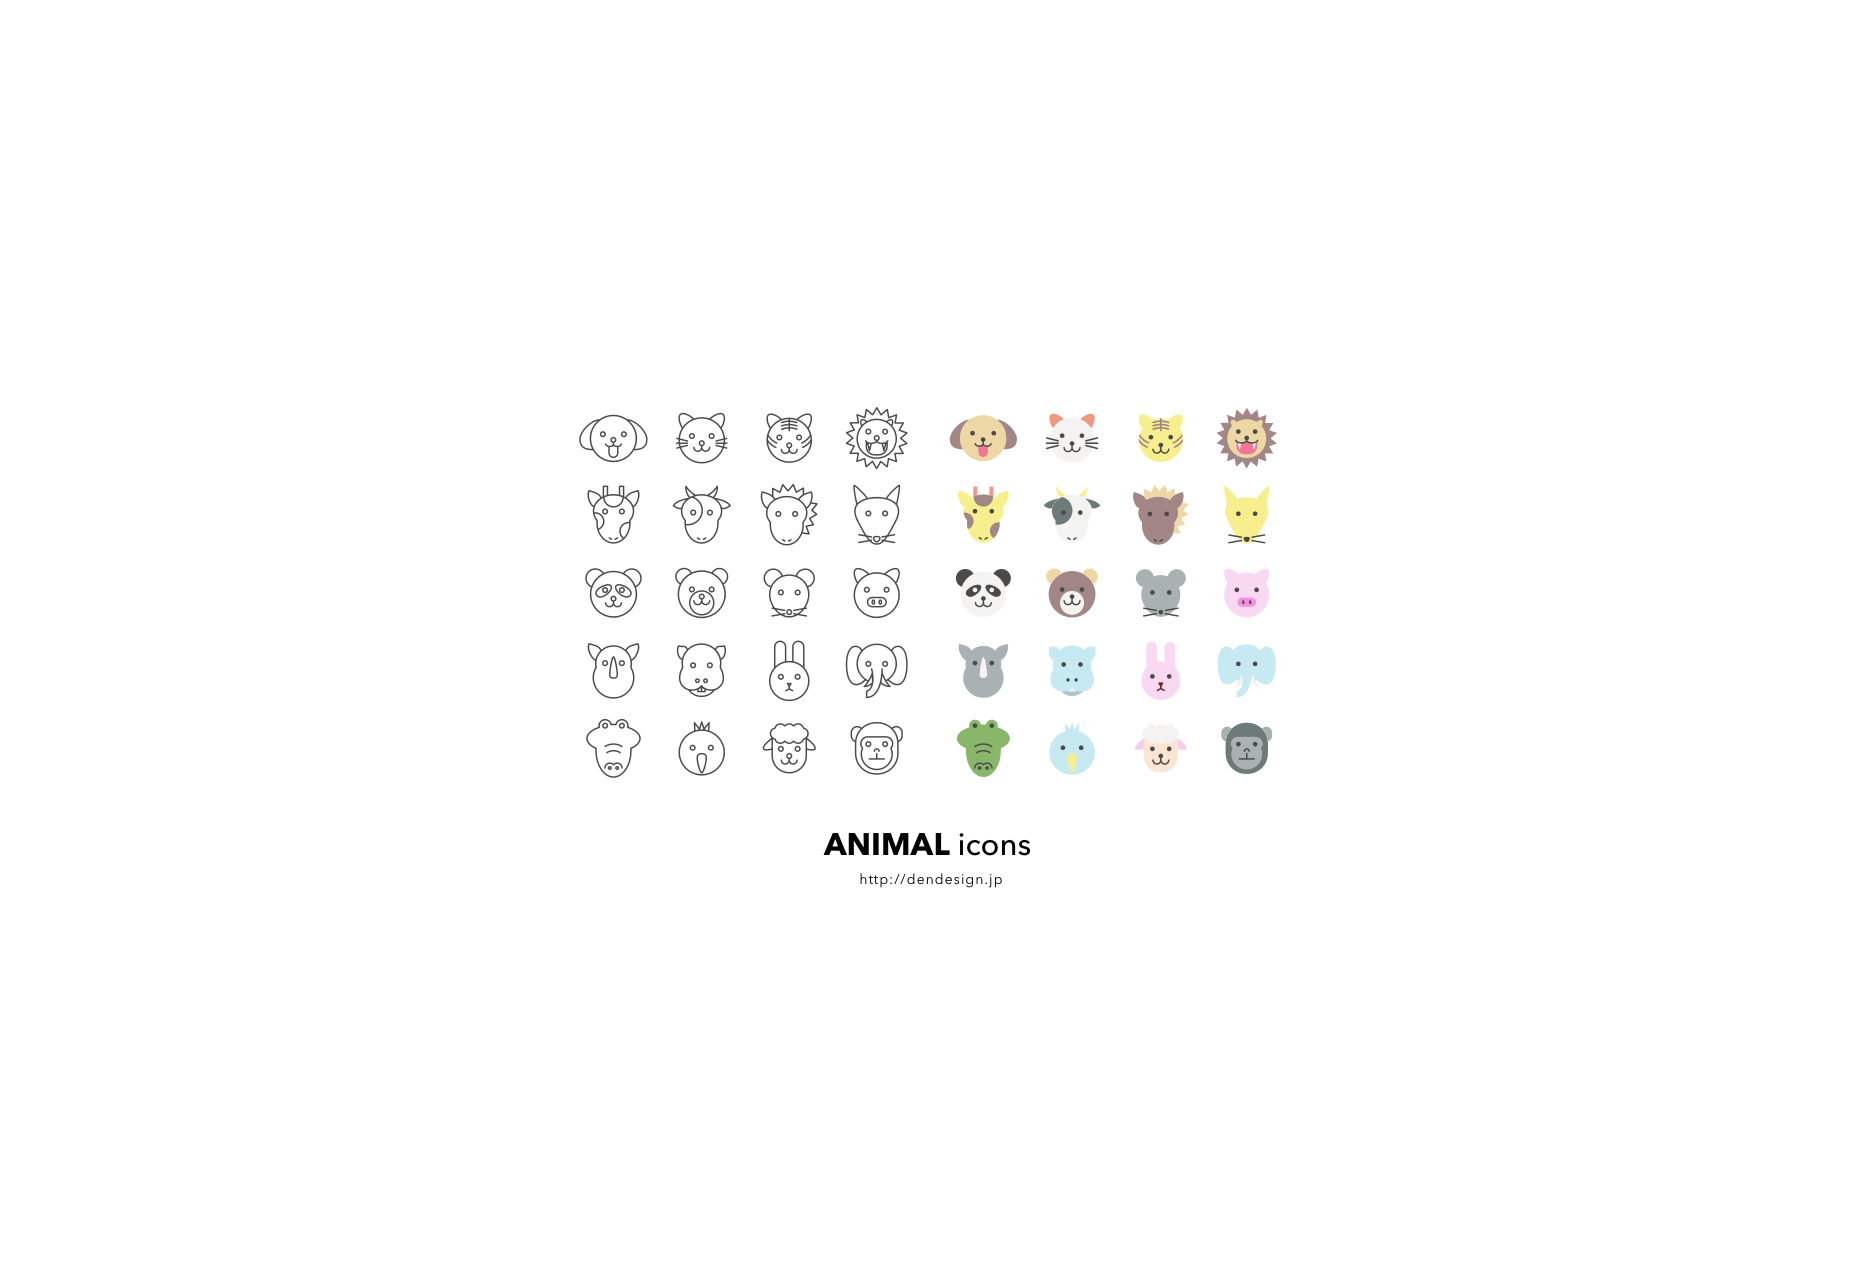 Söpö Animal Icons Sketch Freebie